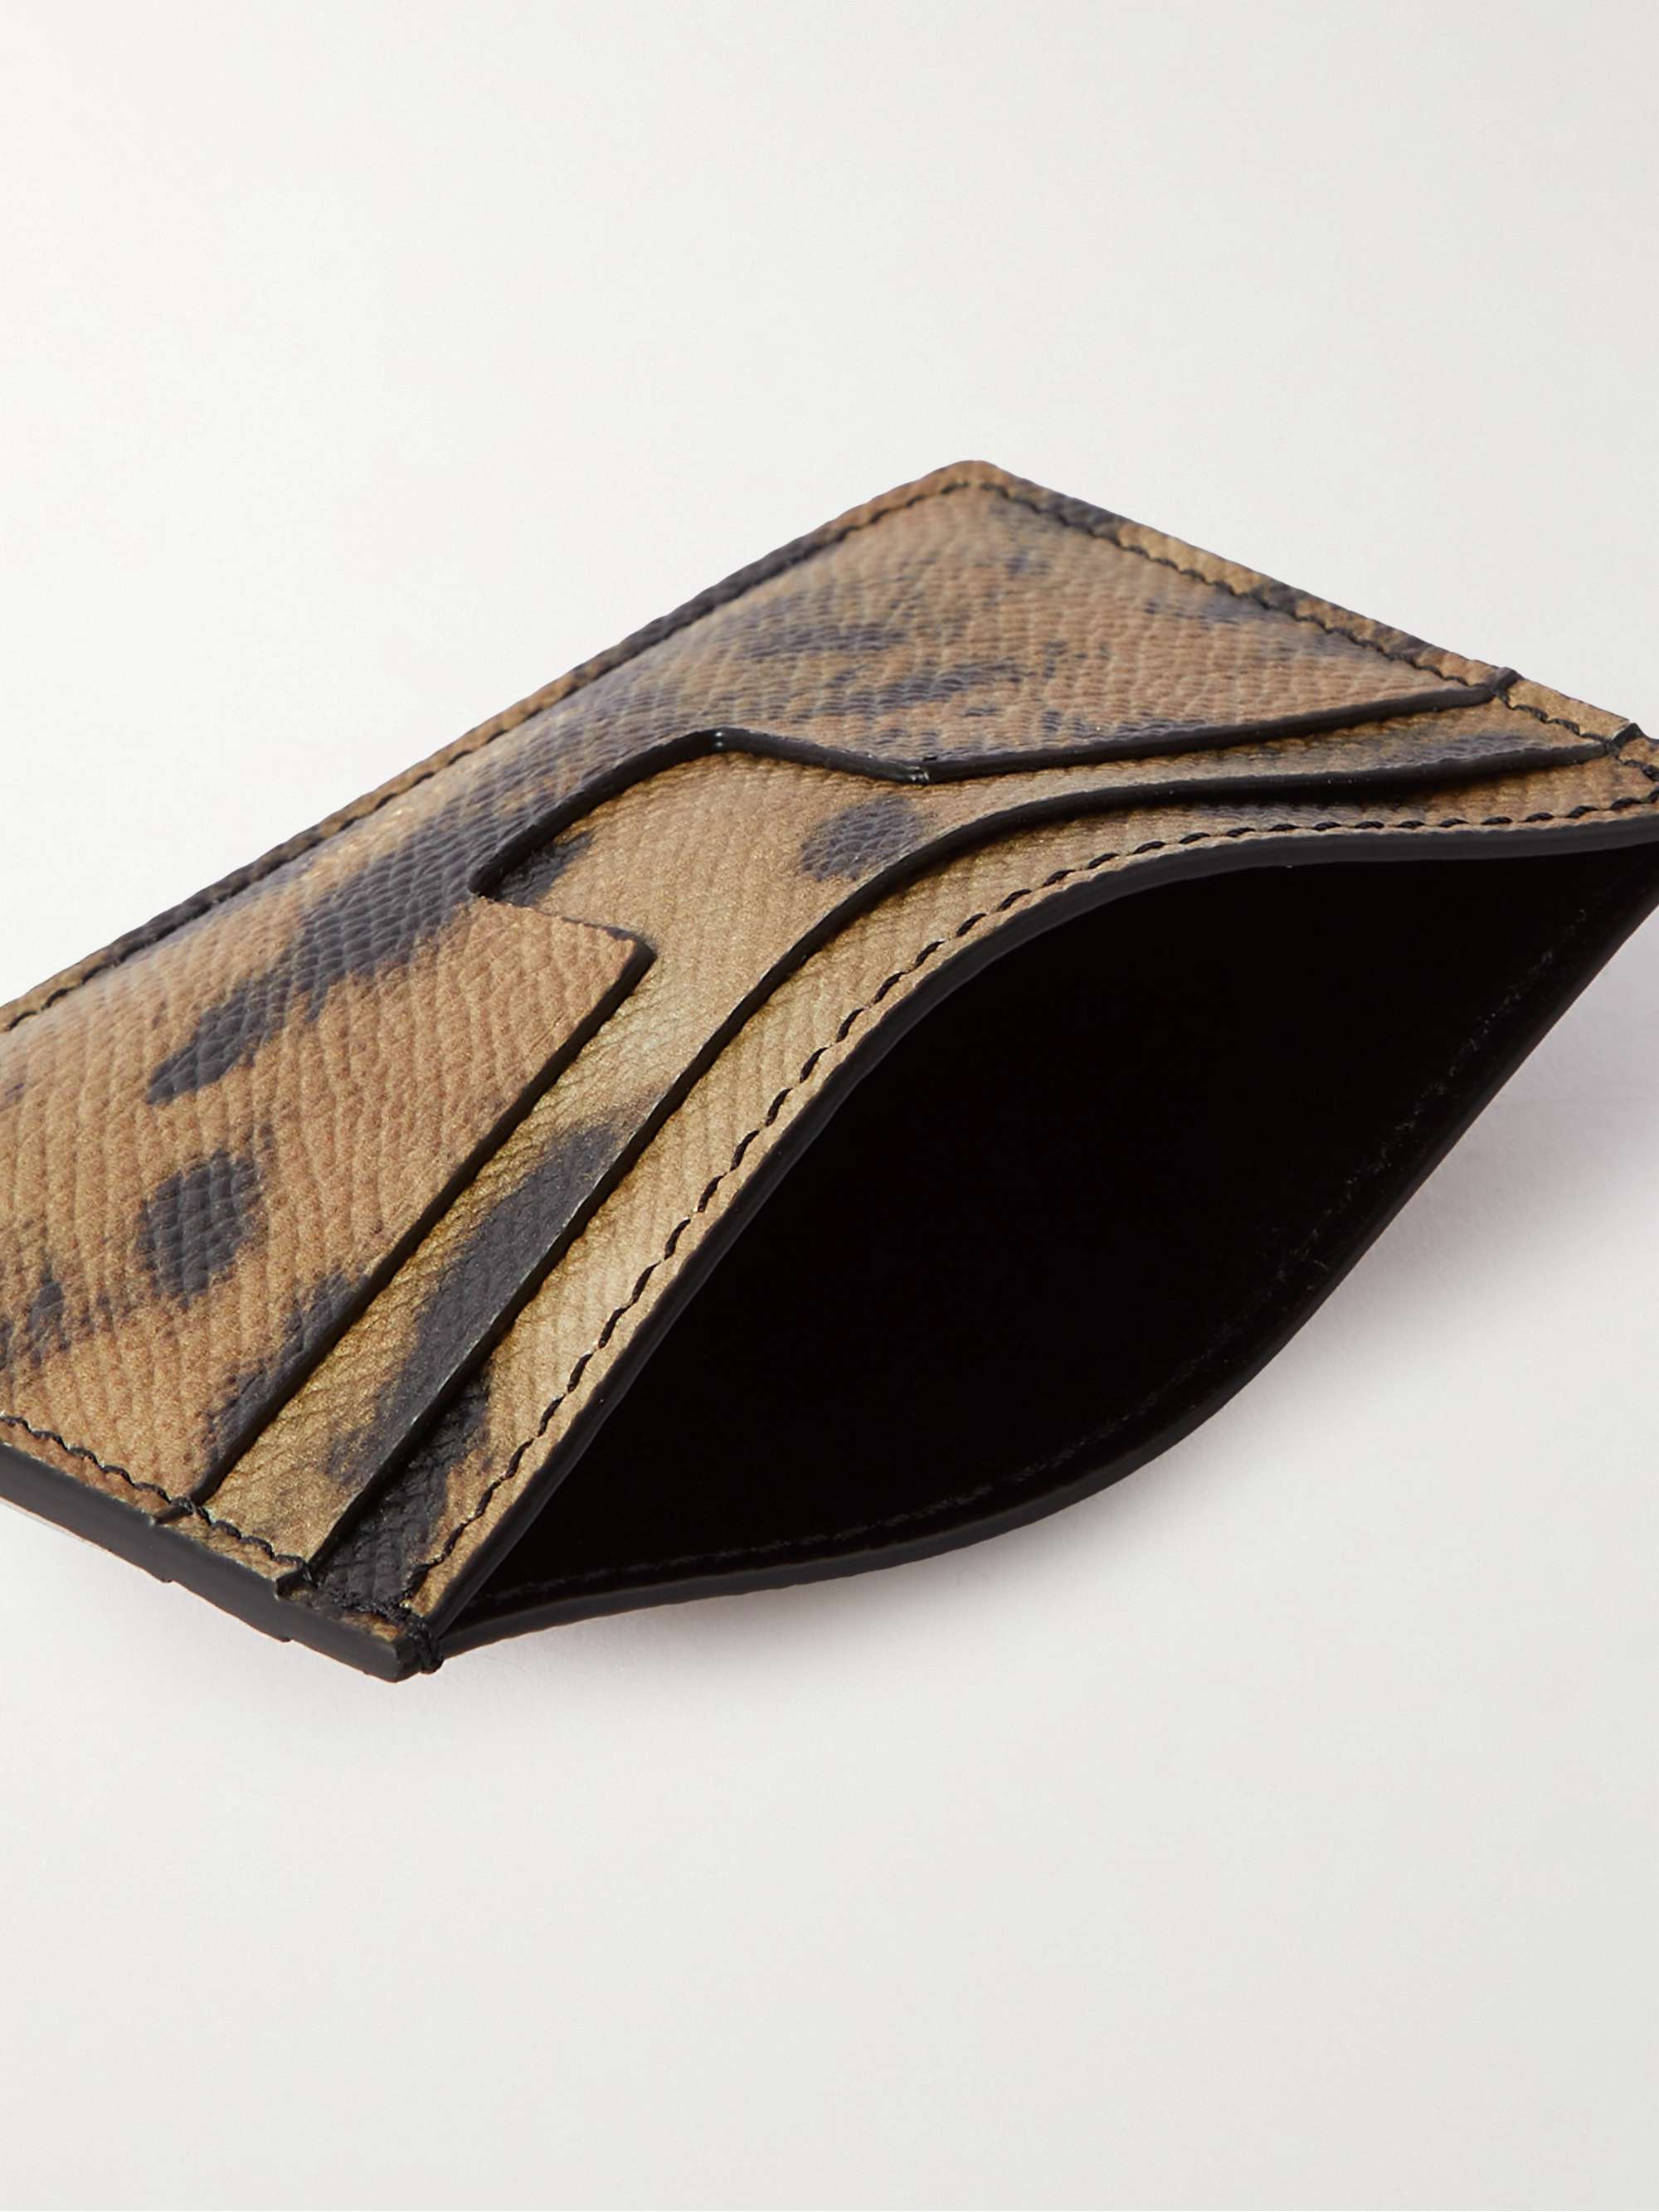 TOM FORD Leopard-Print Full-Grain Leather Cardholder